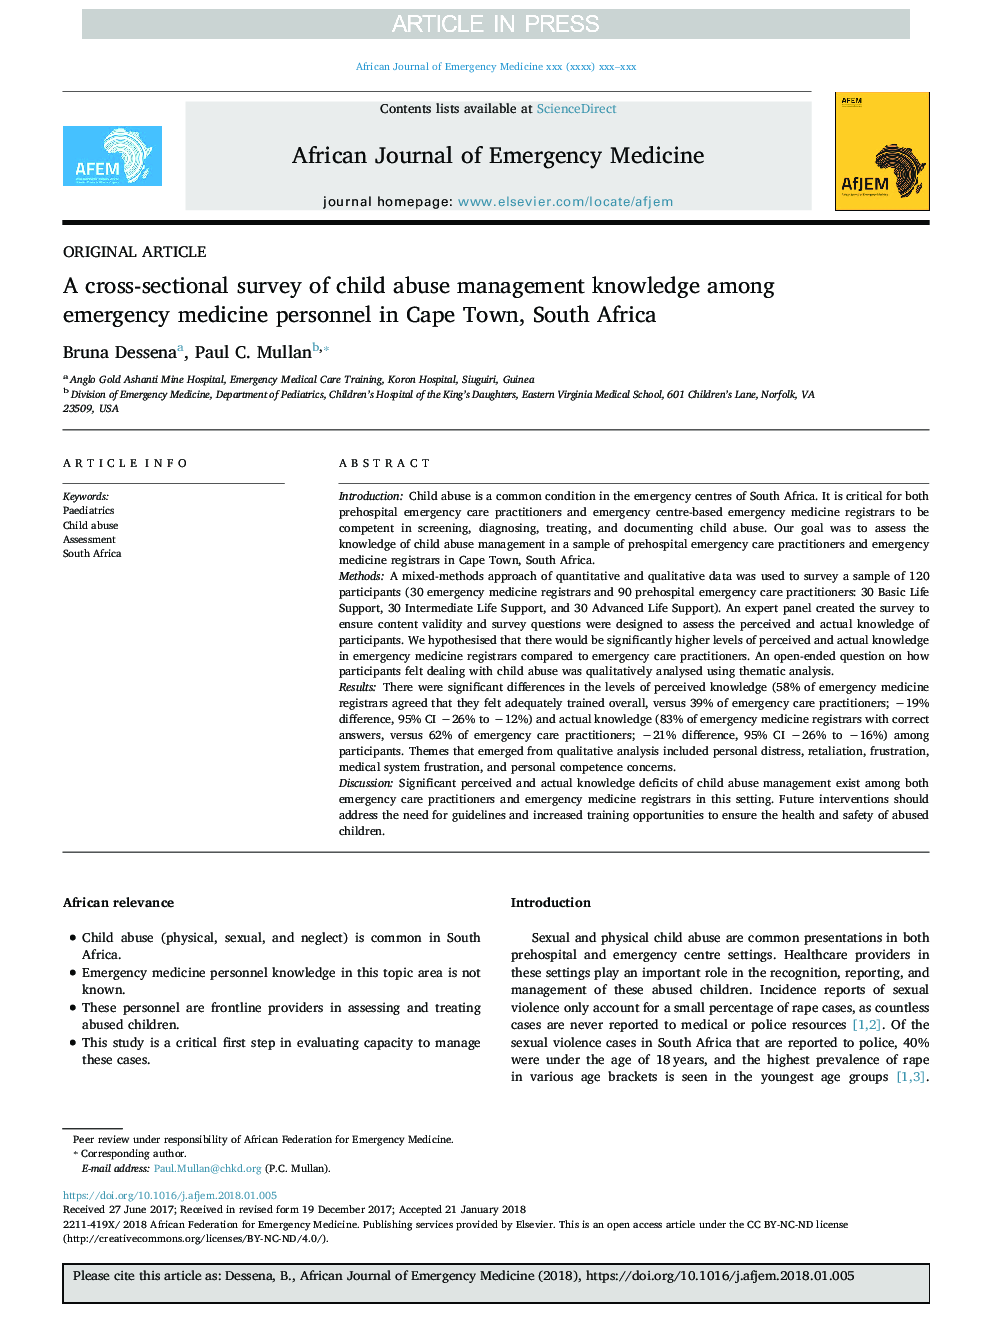 یک بررسی مقطعی از دانش مدیریت مدرسه کودکان در میان پرسنل اورژانس پزشکی در کیپ تاون، آفریقای جنوبی 